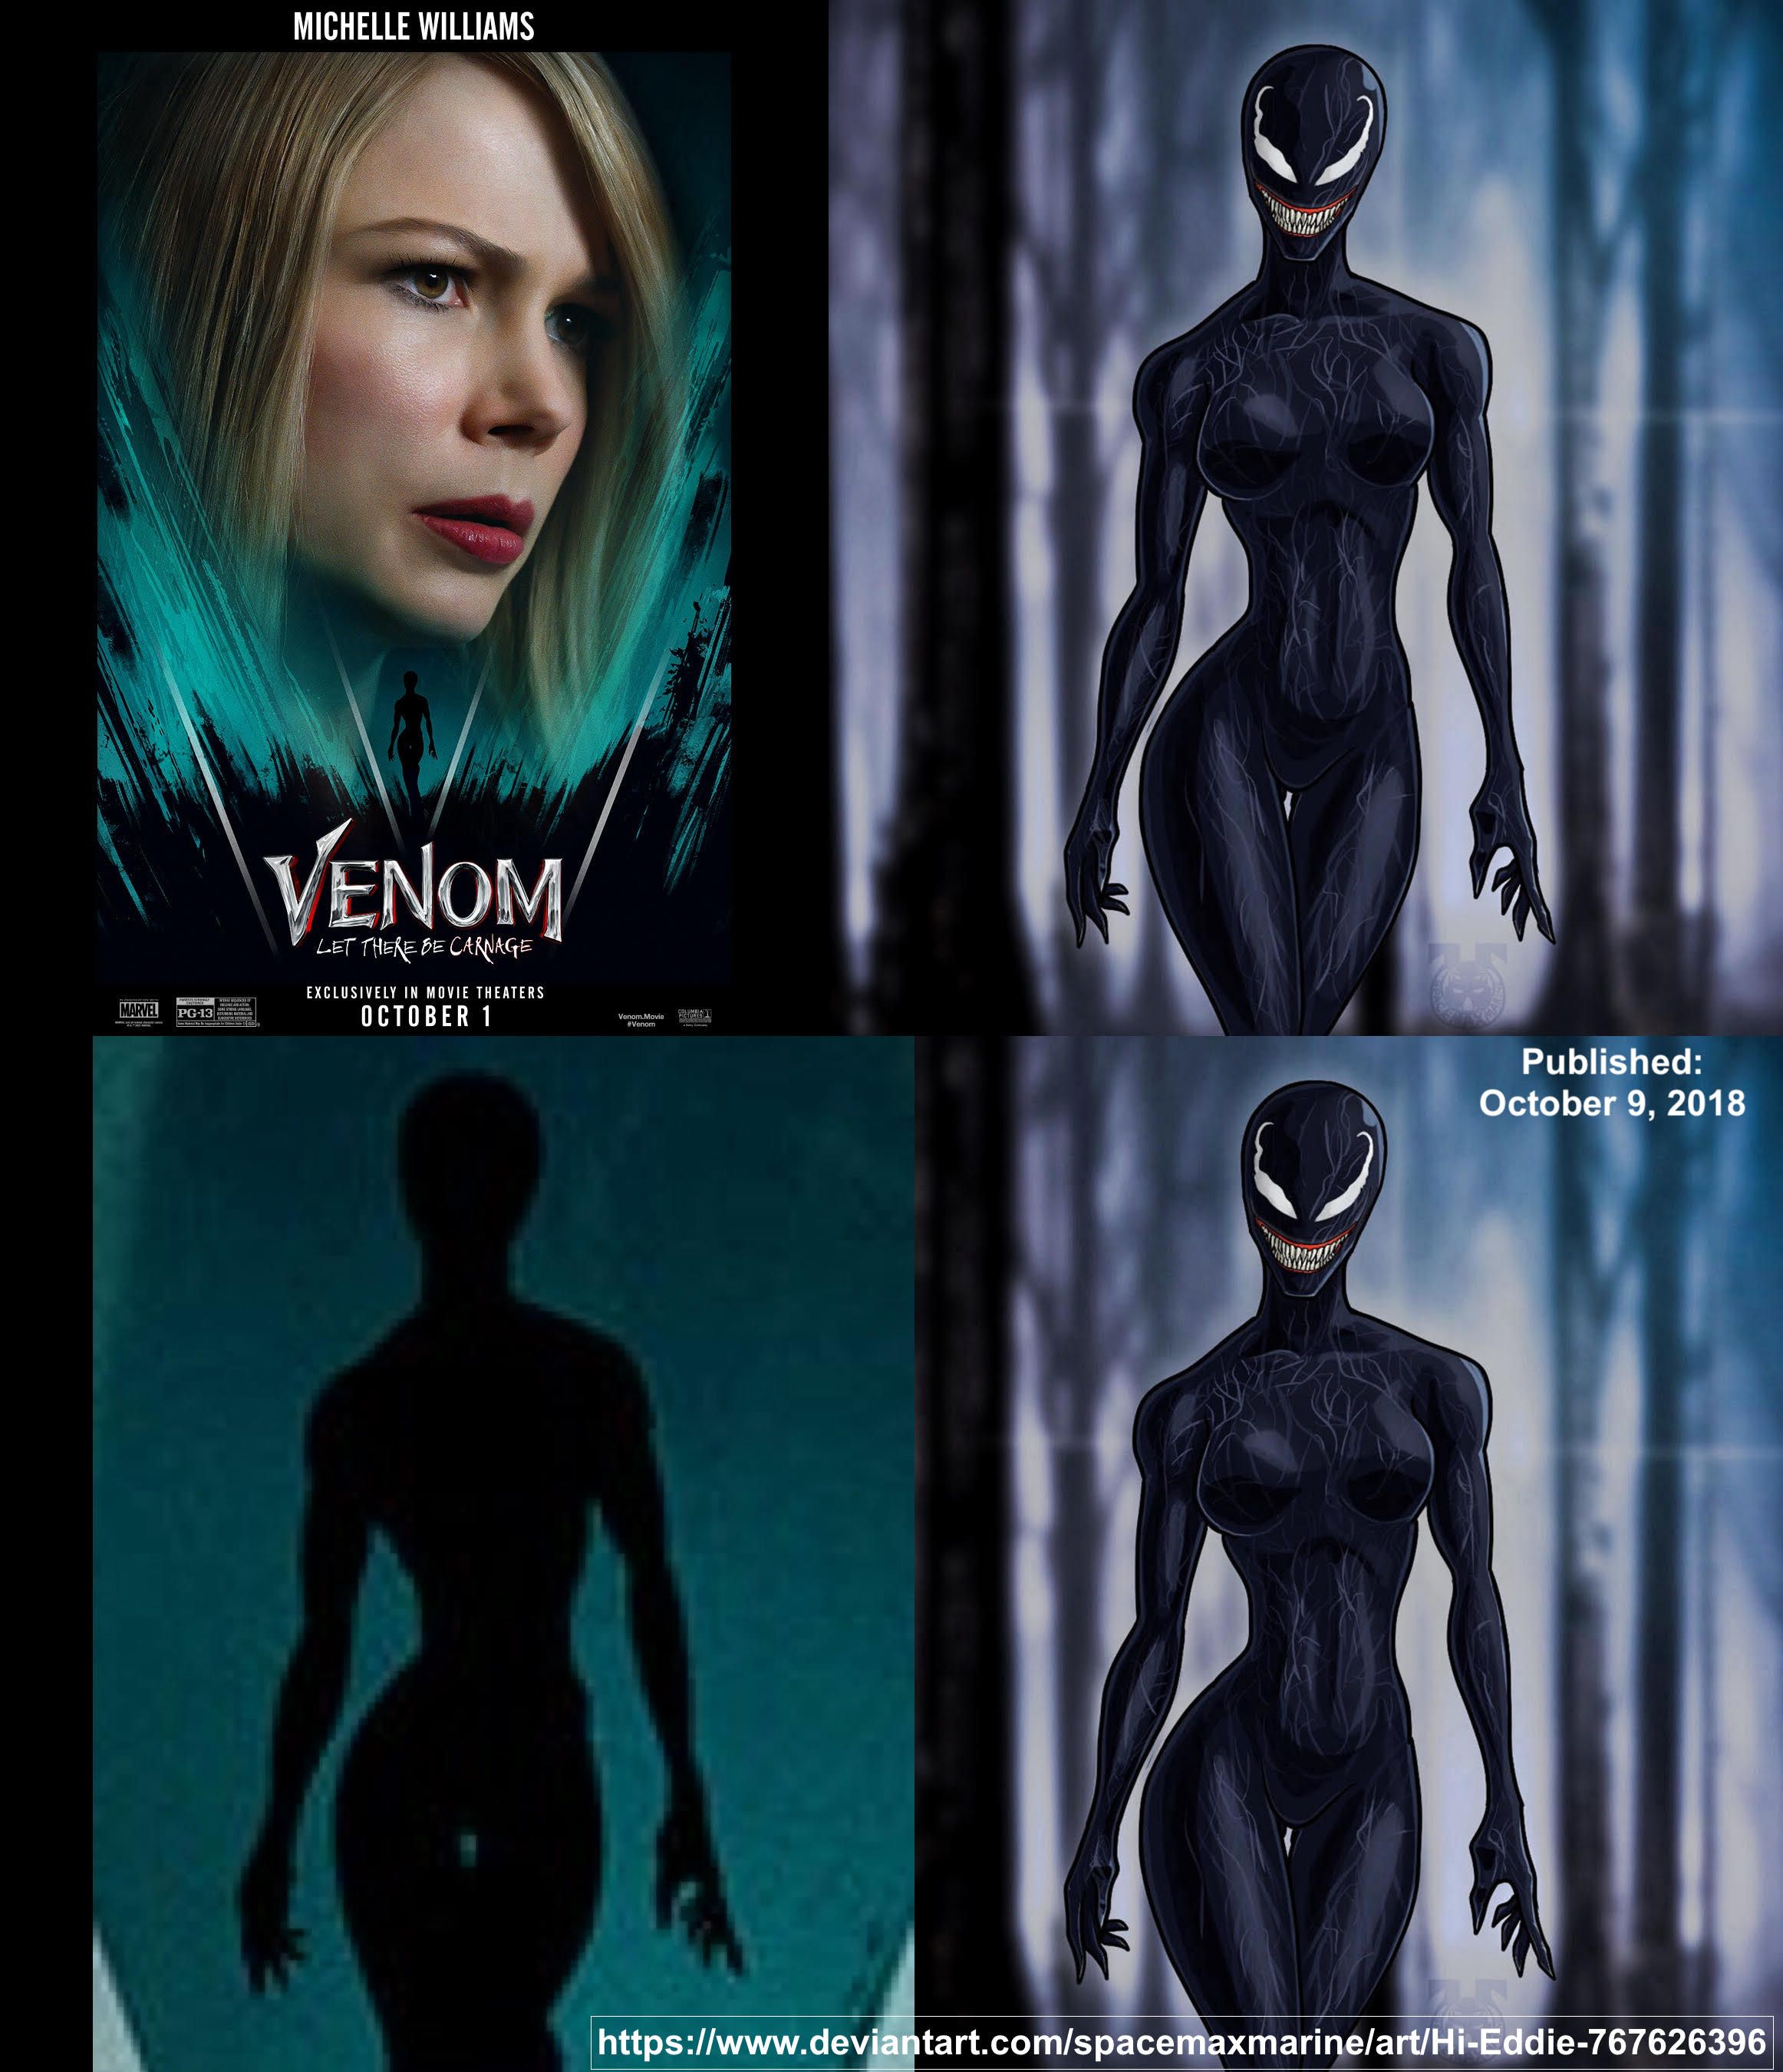 Venom 2 fan art compare